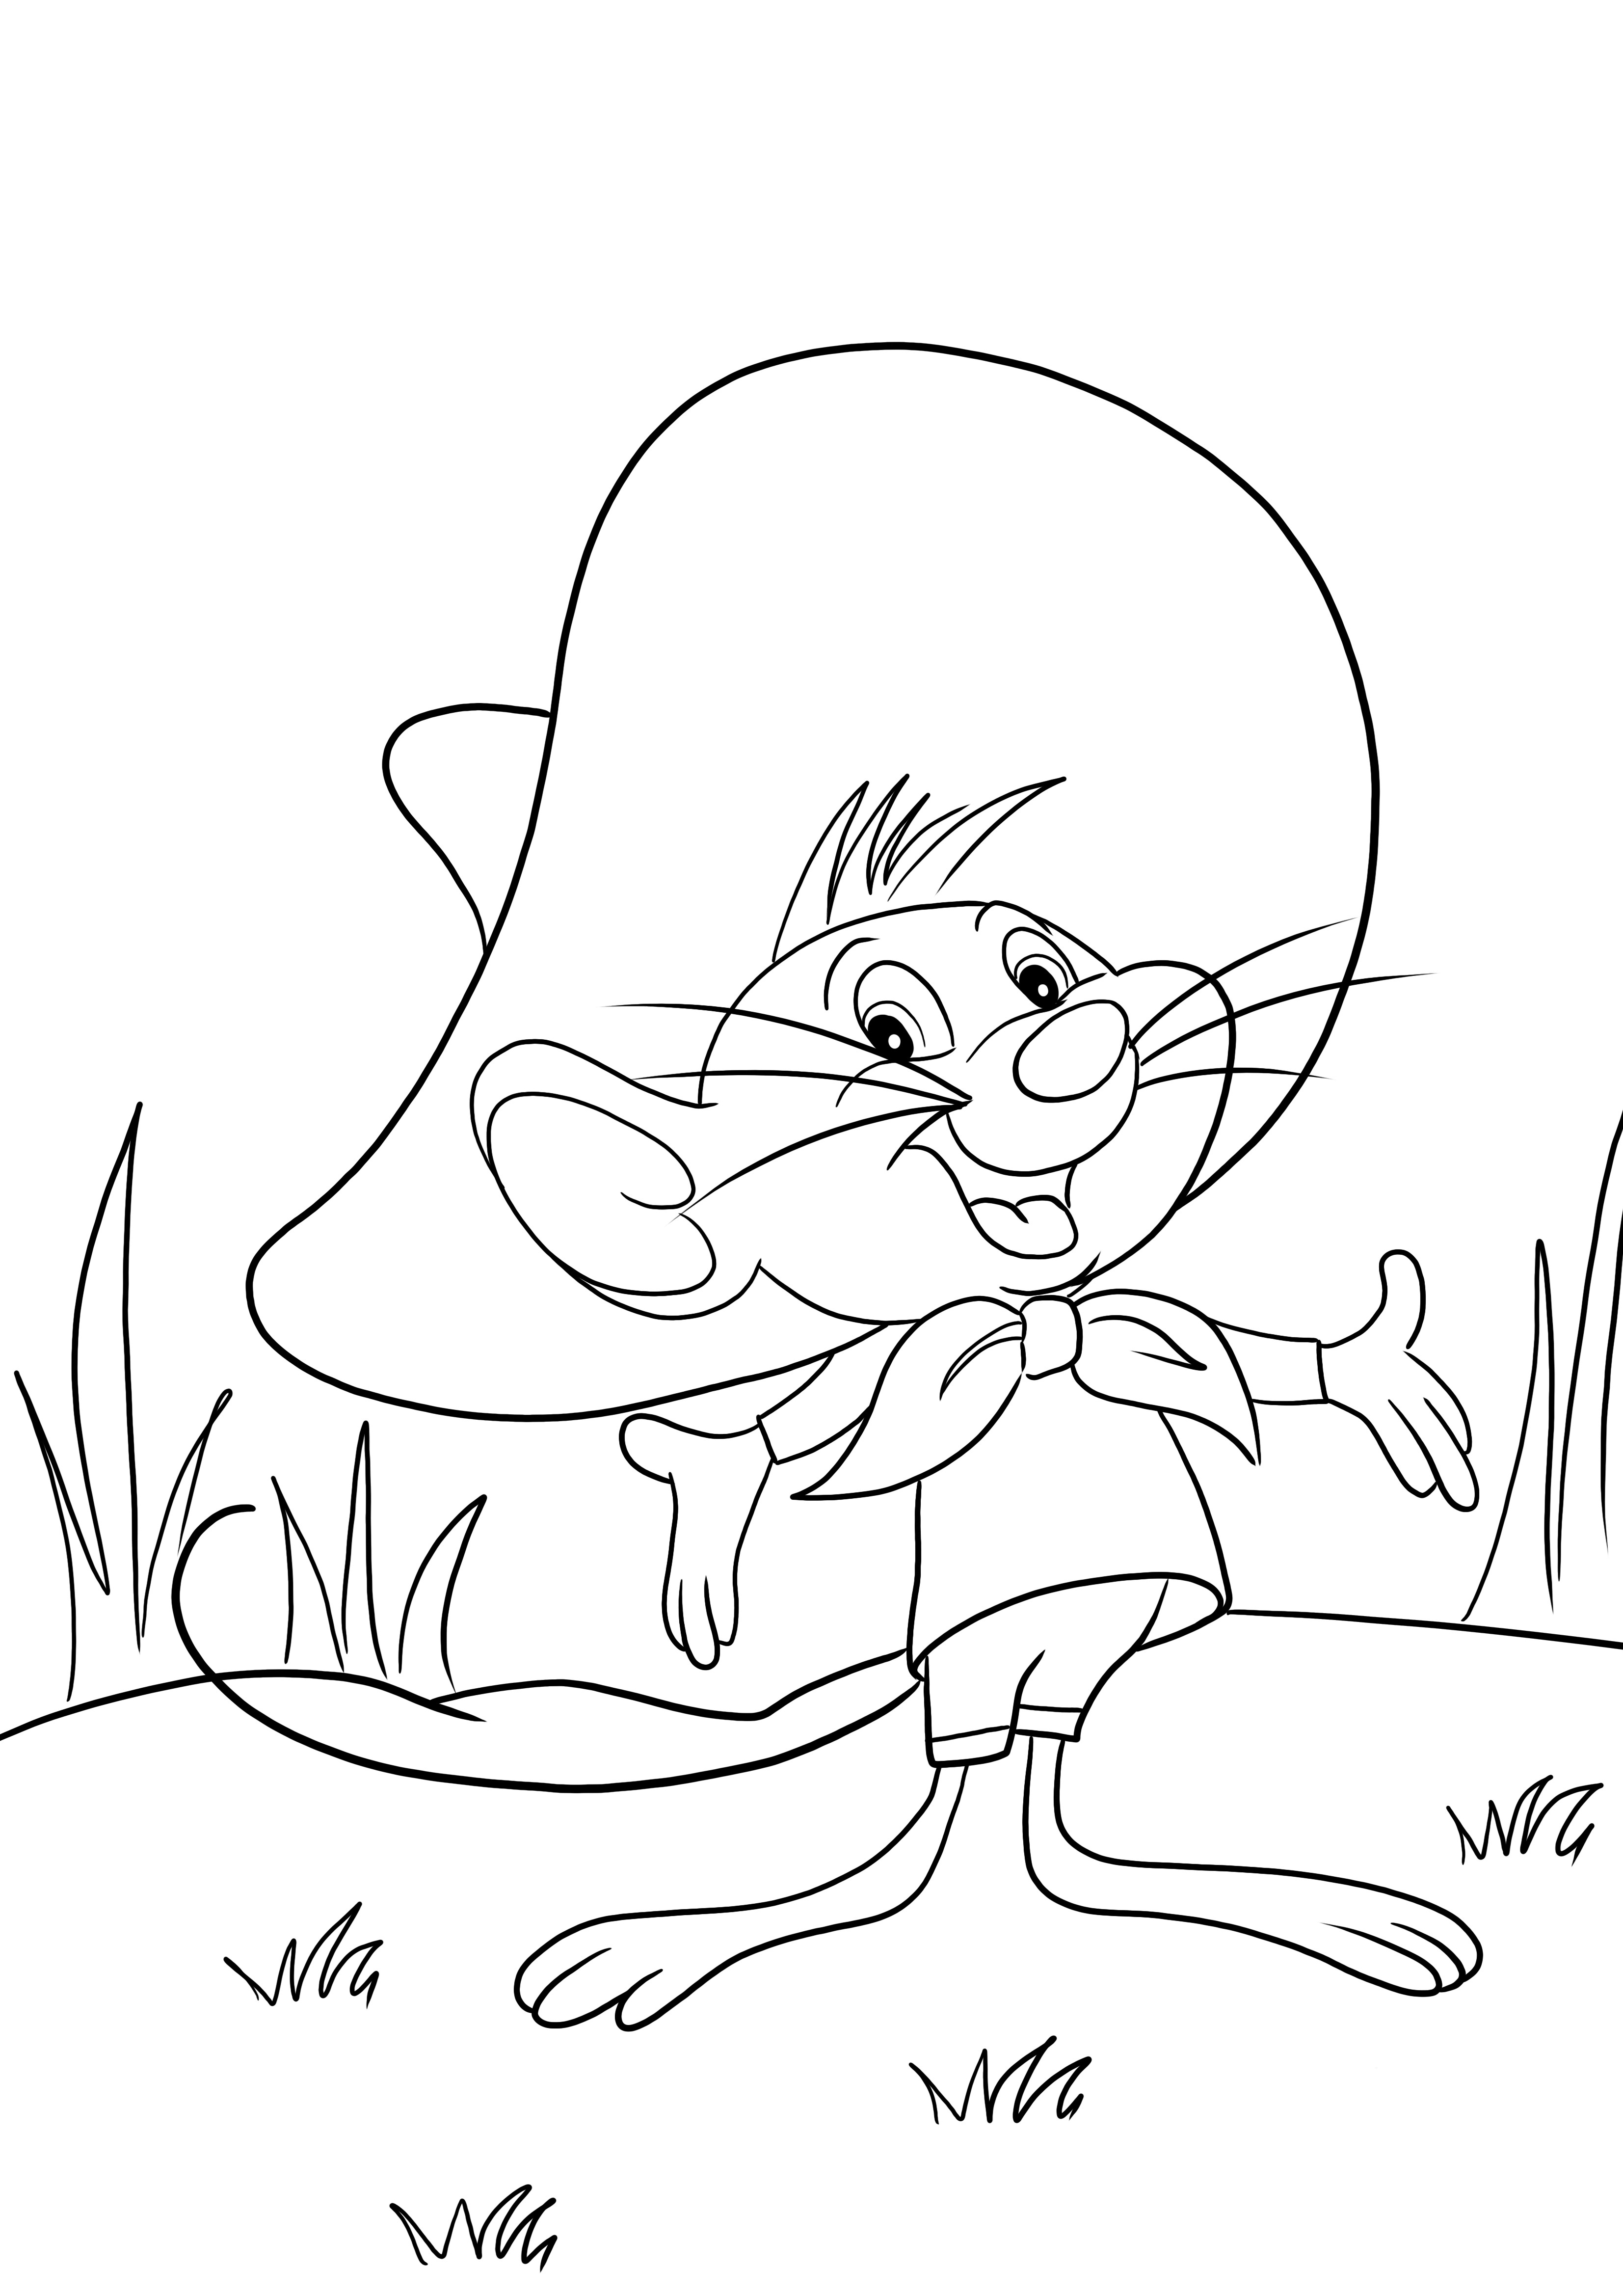 Looney Tunes favori karakterimiz Li'l Sneeze boyama için ücretsiz yazdırılabilir